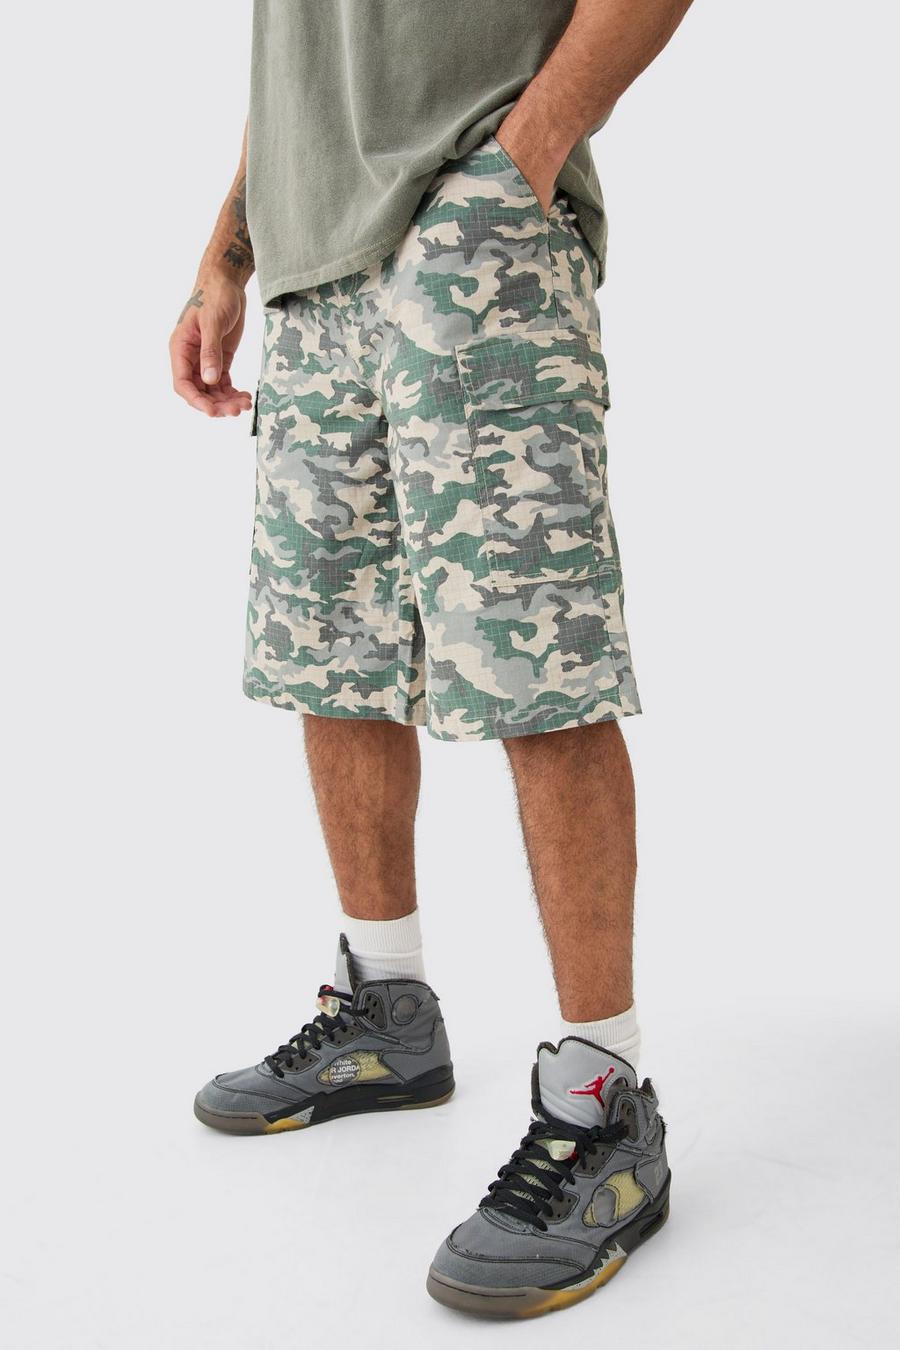 Pantaloni tuta in nylon ripstop in fantasia militare con etichetta intessuta, Khaki